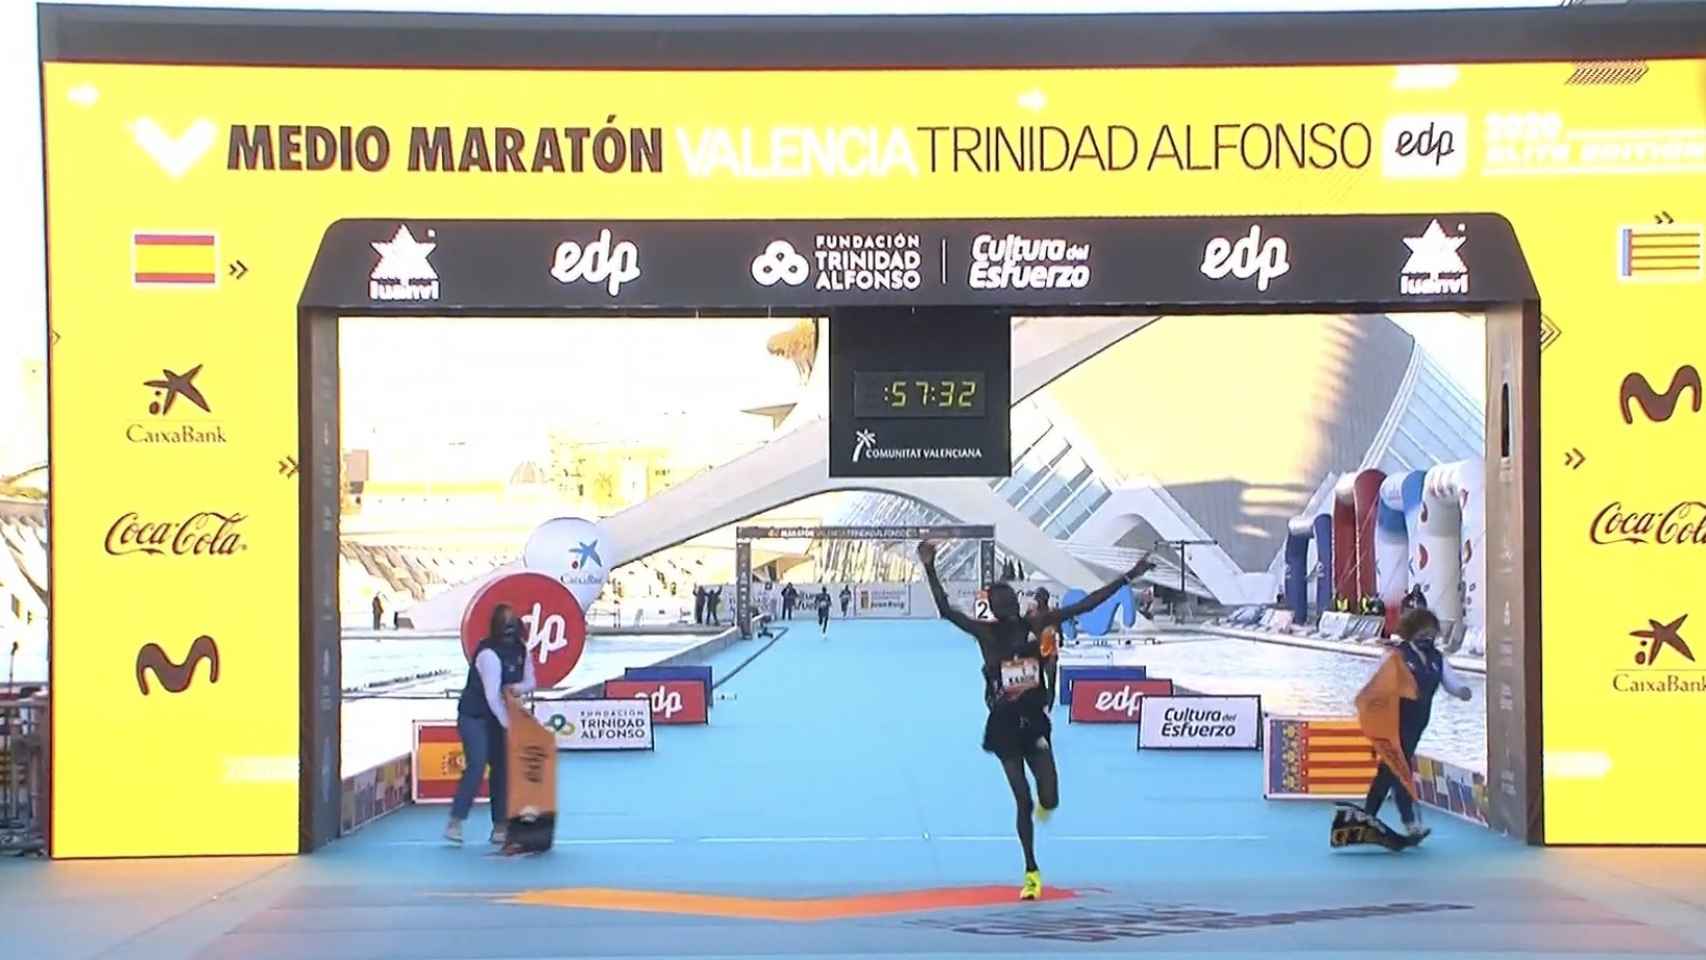 Kibiwott Kandie entrando en la meta de la prueba de media maratón celebrada en Valencia